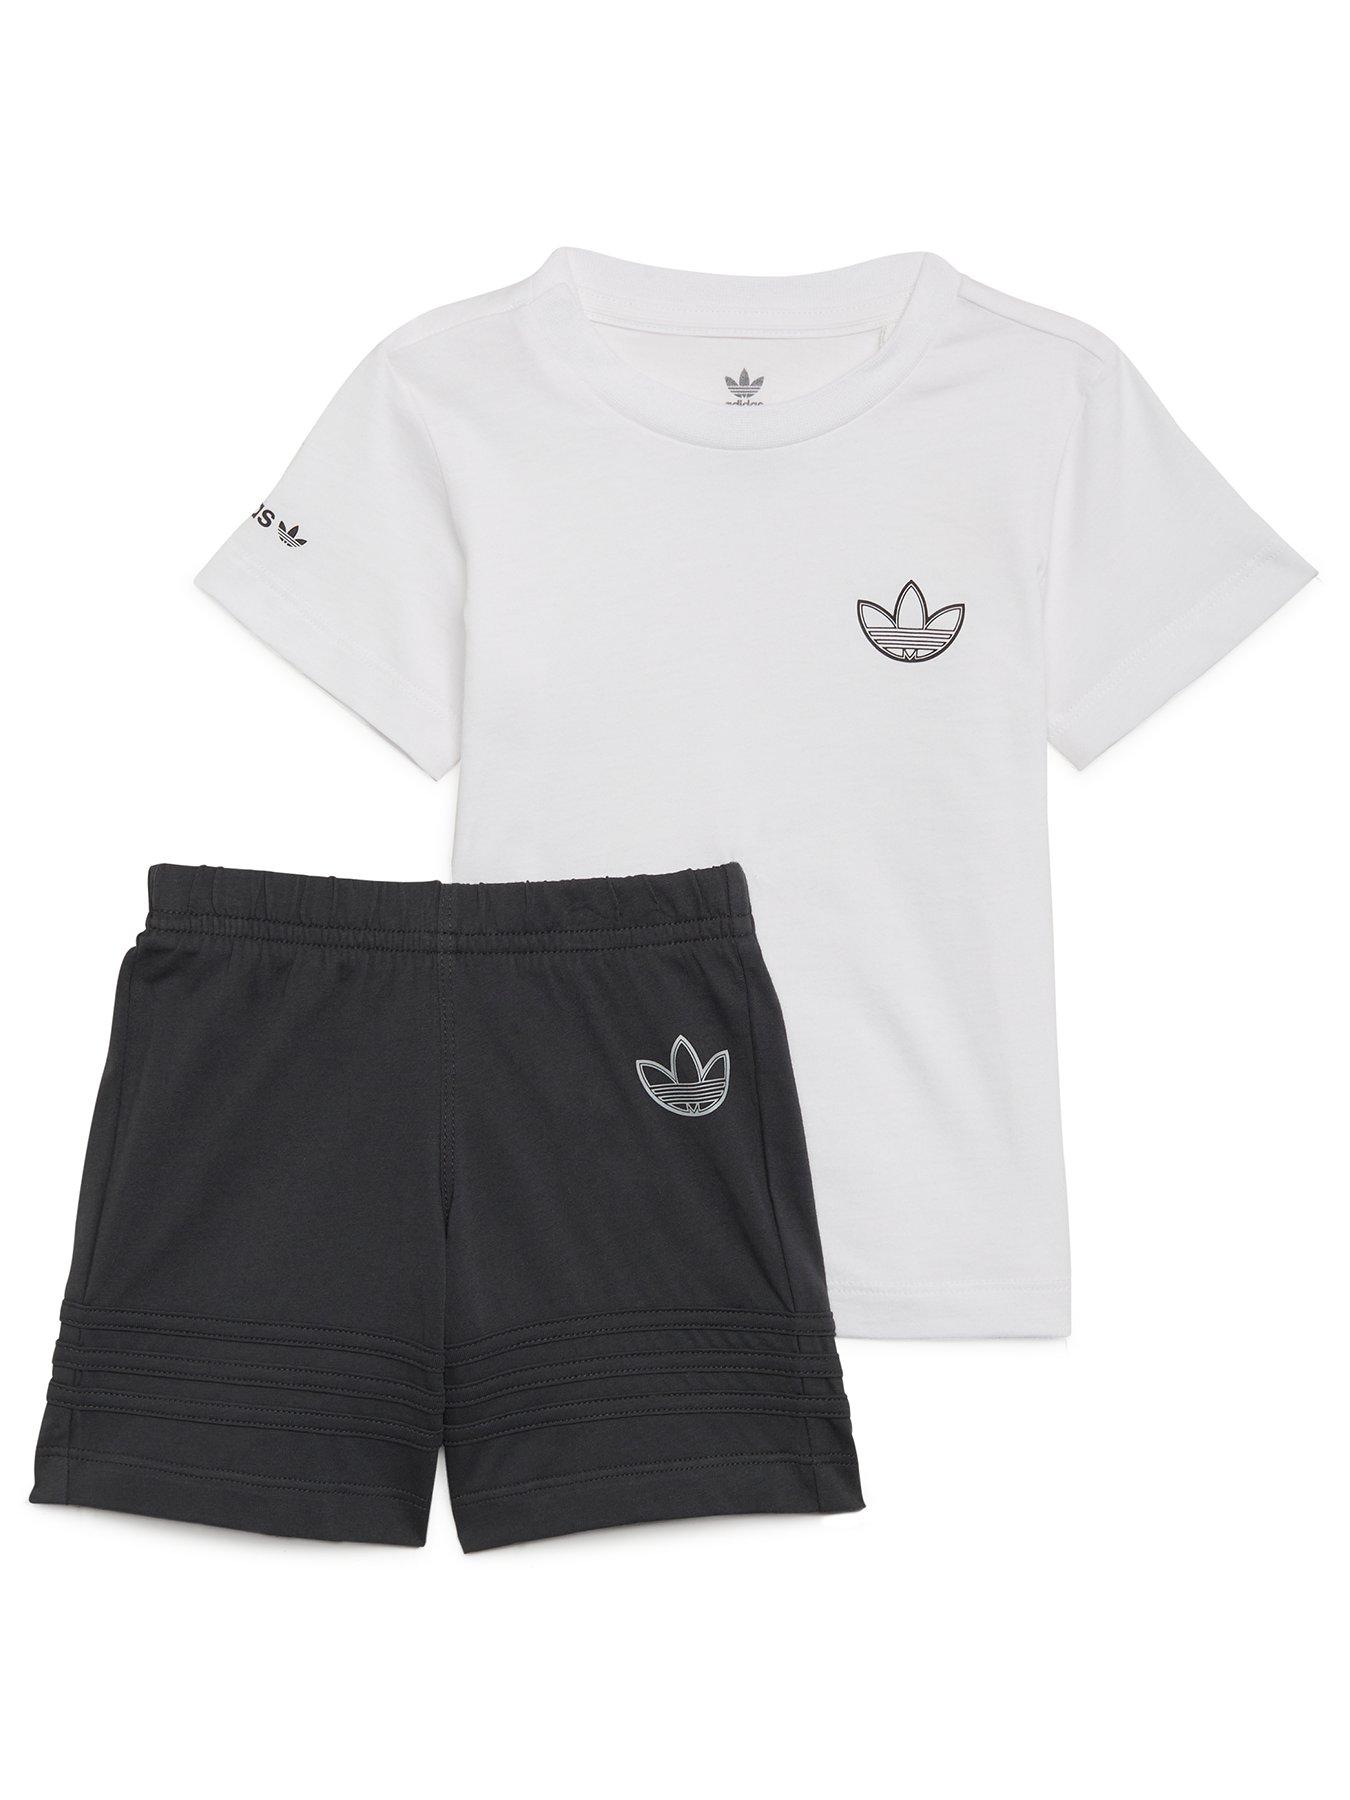  Infant Boys Graphic Trefoil Tee & Short Set - White/Grey